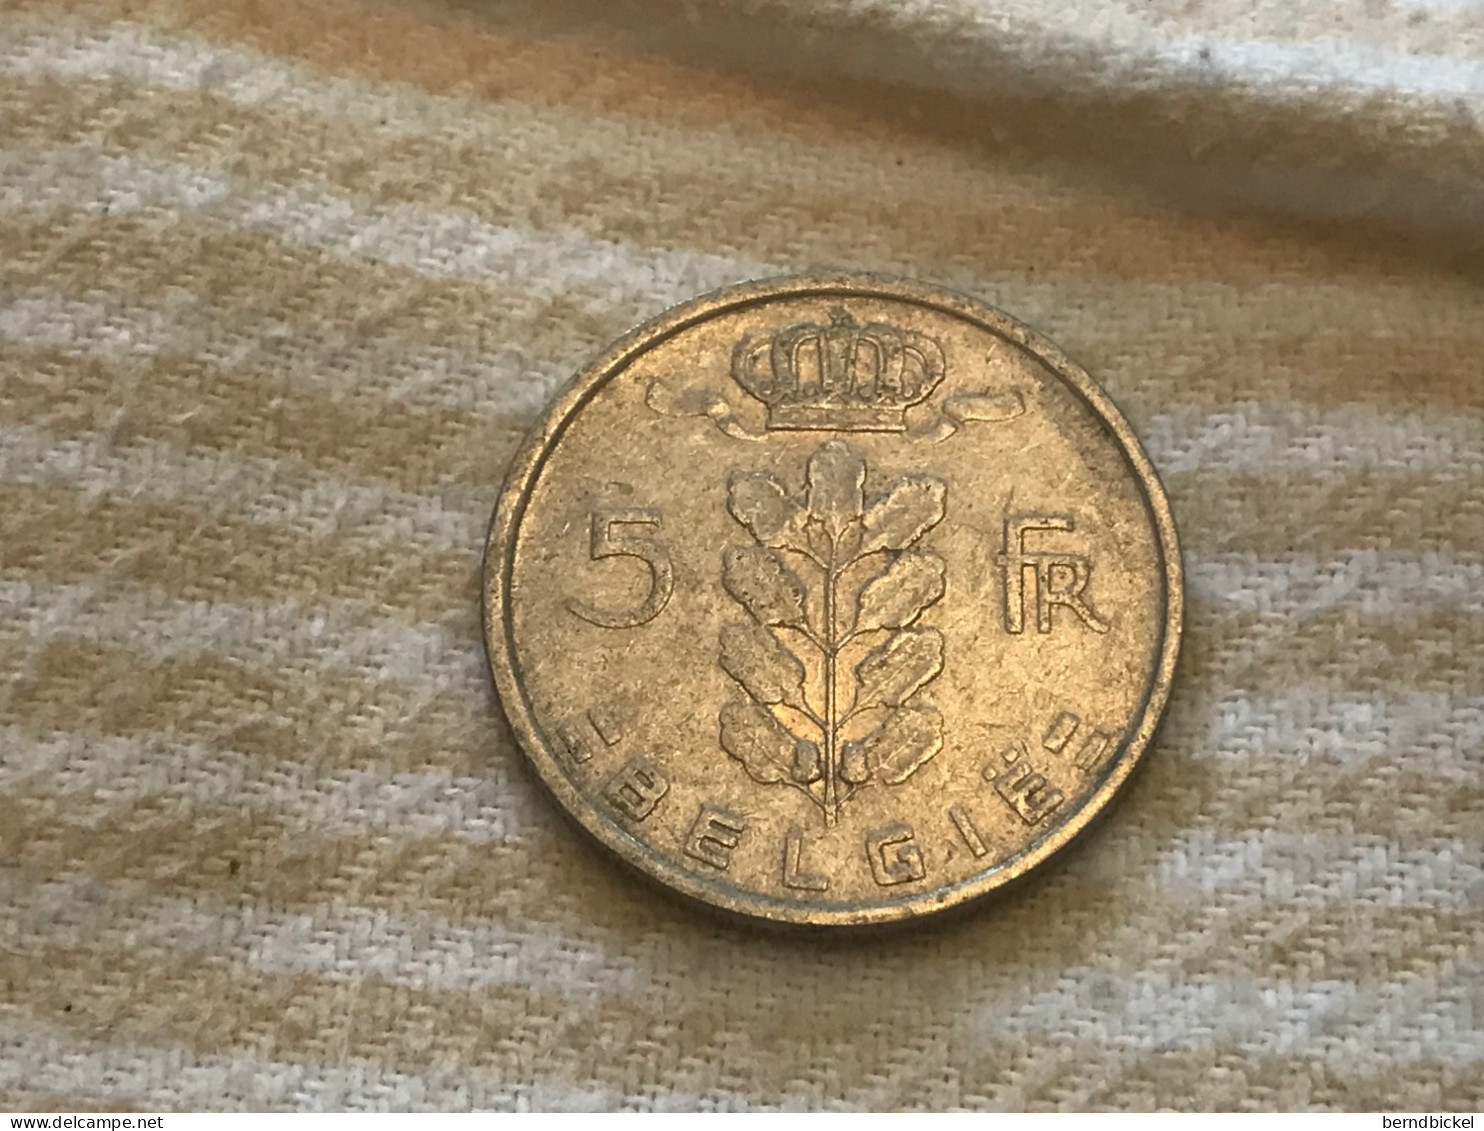 Münze Münzen Umlaufmünze Belgien 5 Francs 1950 Belgie - 5 Francs